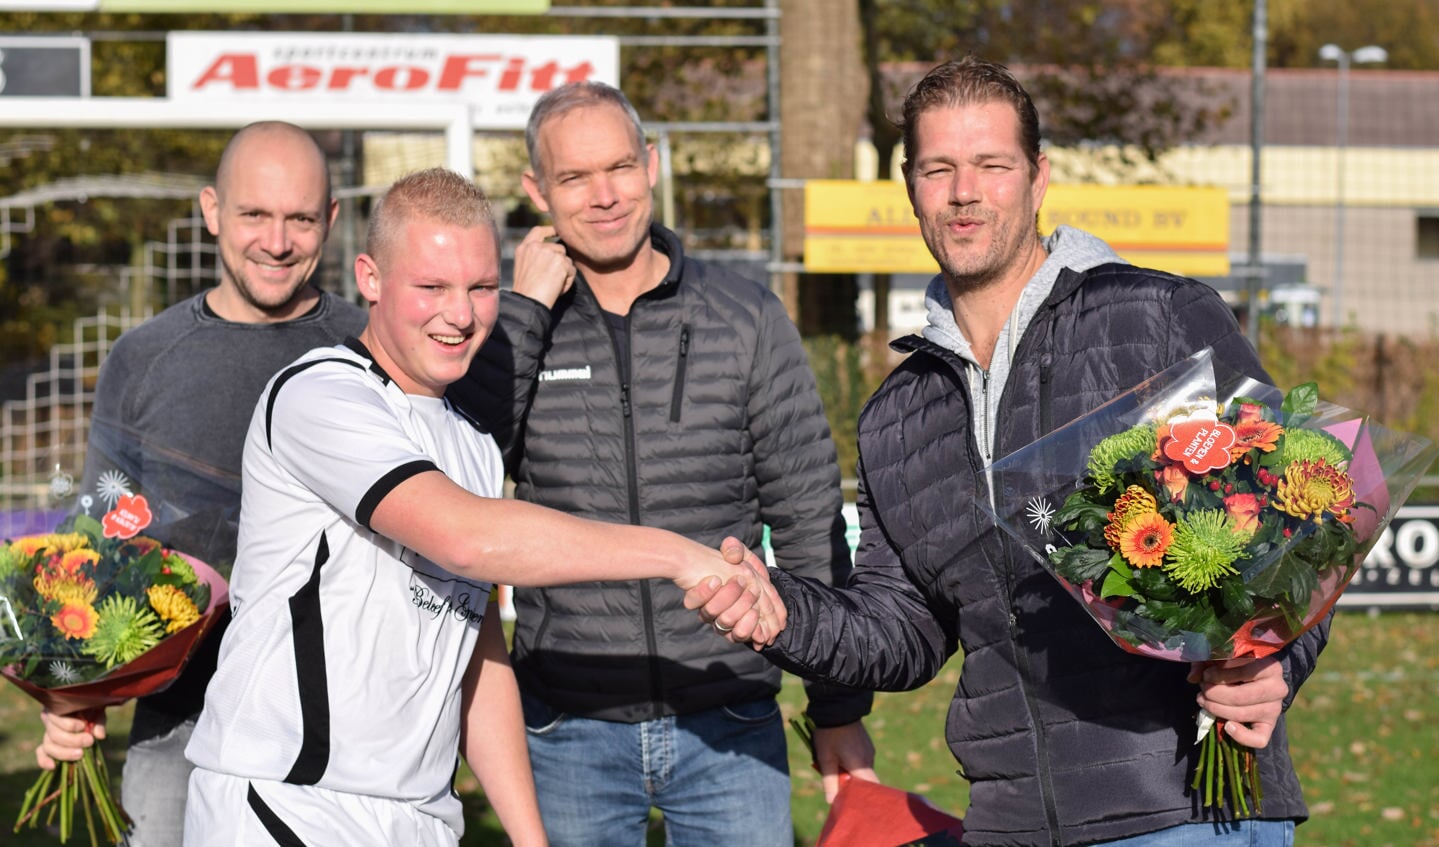 Aanvoerder Tim Schruijer overhandigt de sponsoren een bos bloemen. Foto: PR